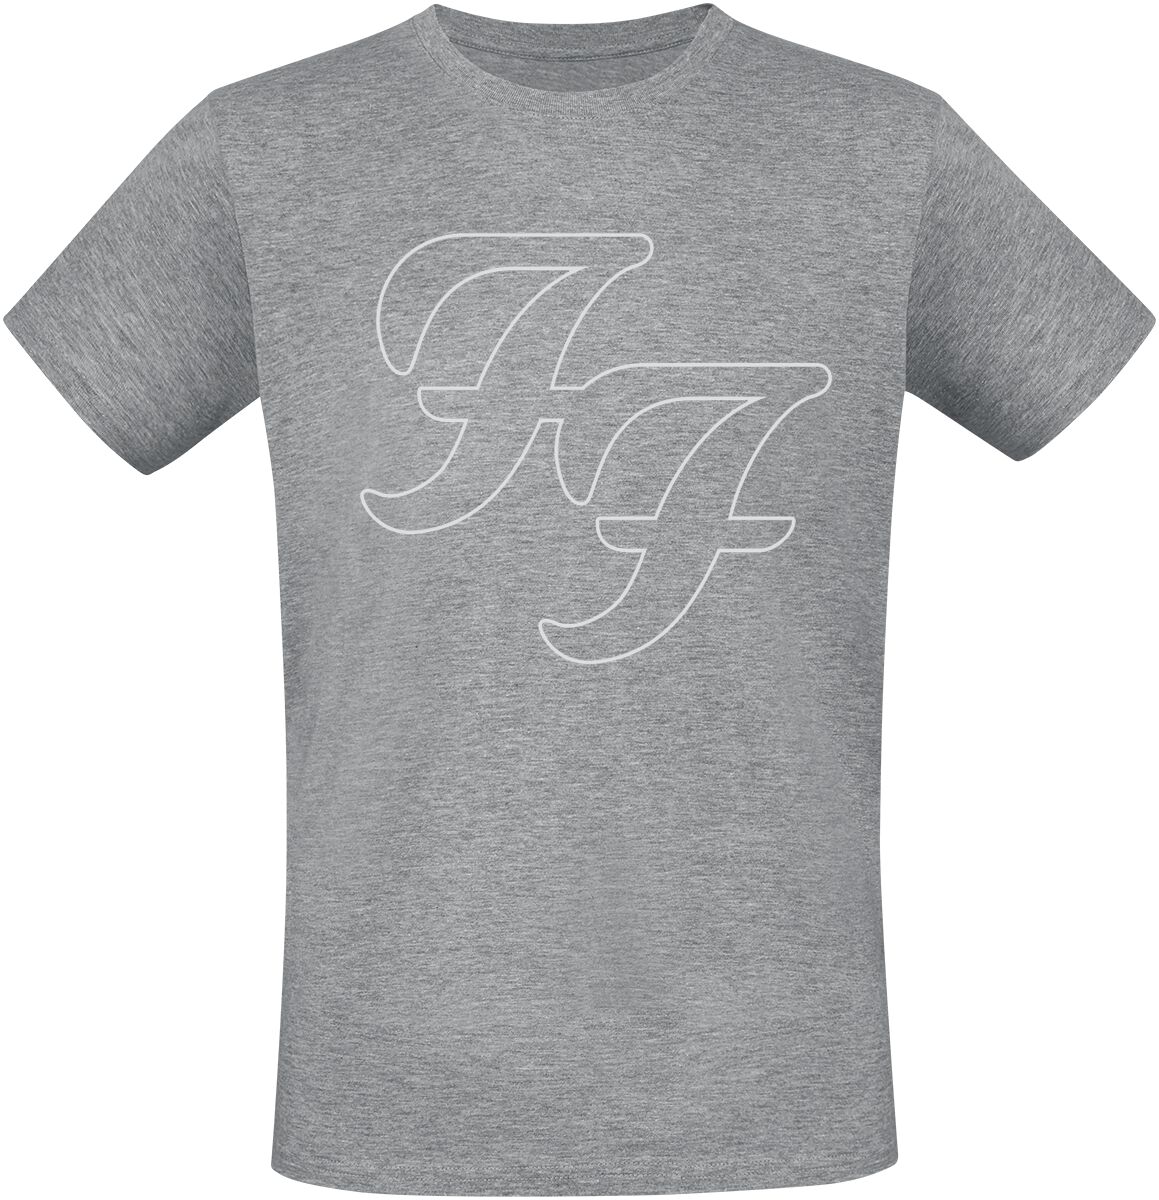 Foo Fighters T-Shirt - But Here We Are - S bis 3XL - für Männer - Größe L - grau meliert  - Lizenziertes Merchandise!